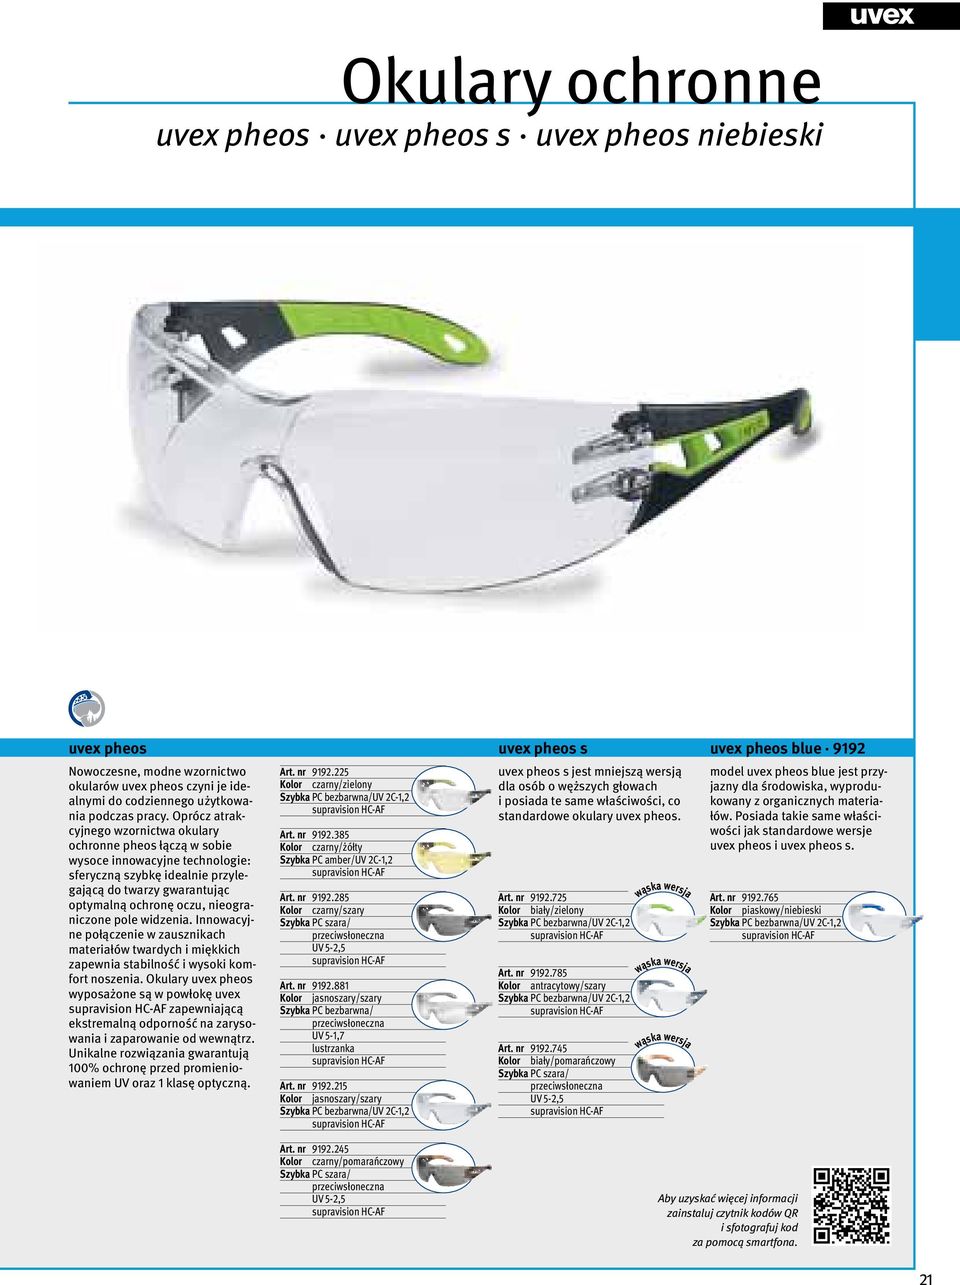 Oprócz atrakcyjnego wzornictwa okulary ochronne pheos łączą w sobie wysoce innowacyjne technologie: sferyczną szybkę idealnie przylegającą do twarzy gwarantując optymalną ochronę oczu, nieograniczone